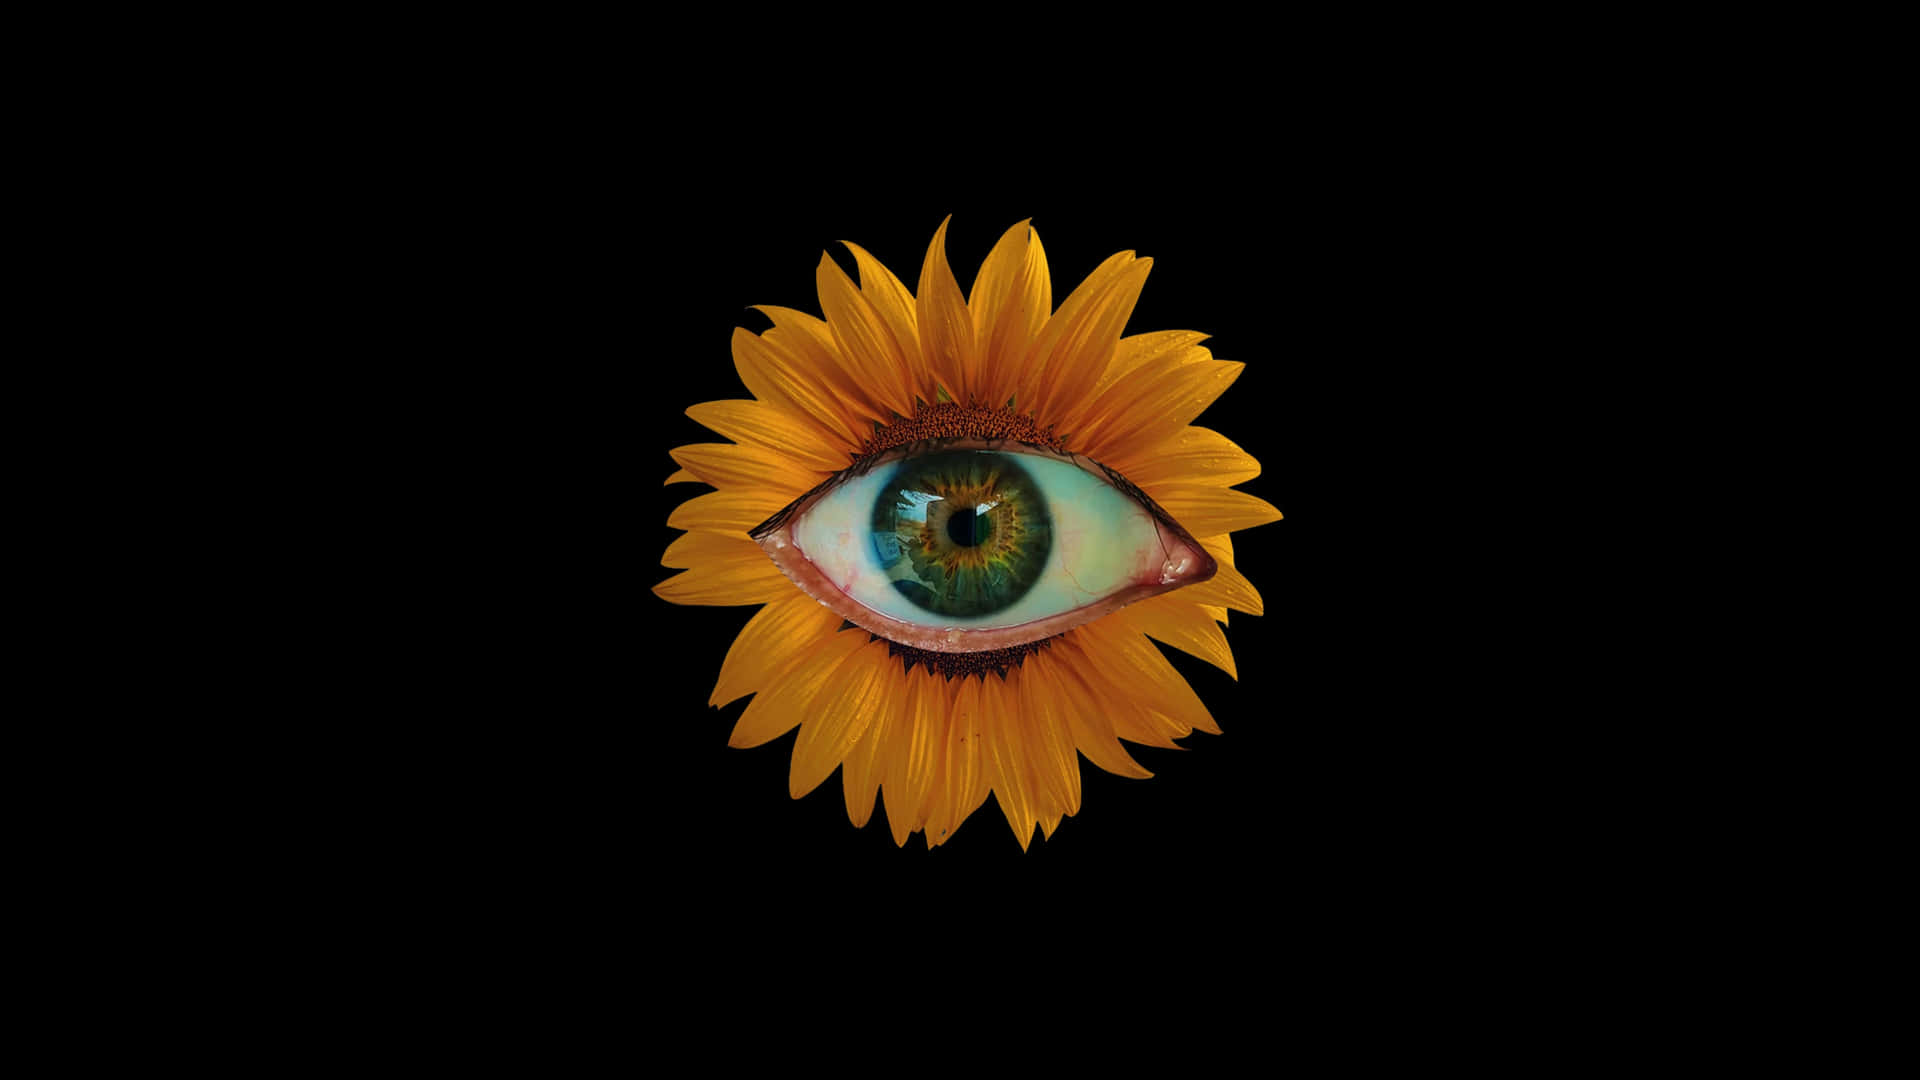 Sunflower Vision_ Surreal Art.jpg Wallpaper